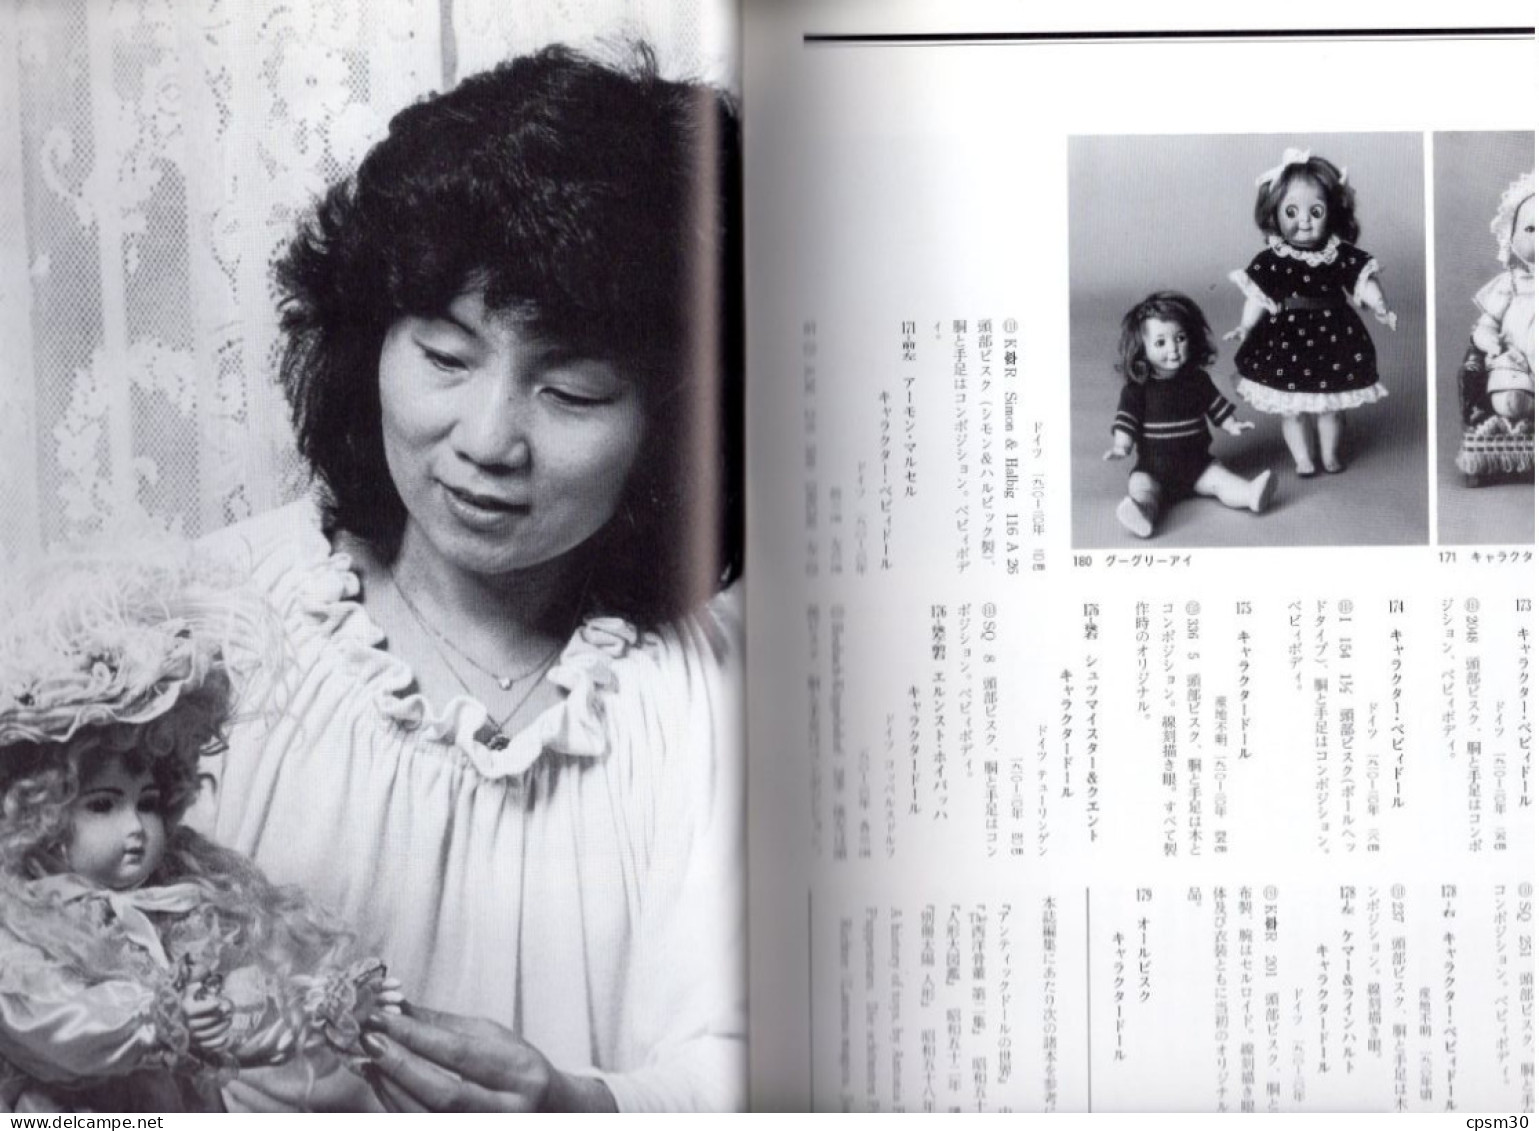 Livre, Catalogue De Réferences De Poupées, édition ?? JAPON ?? 160 Pages Environ 1980/90 ( 本の人形 ) - Encyclopaedia